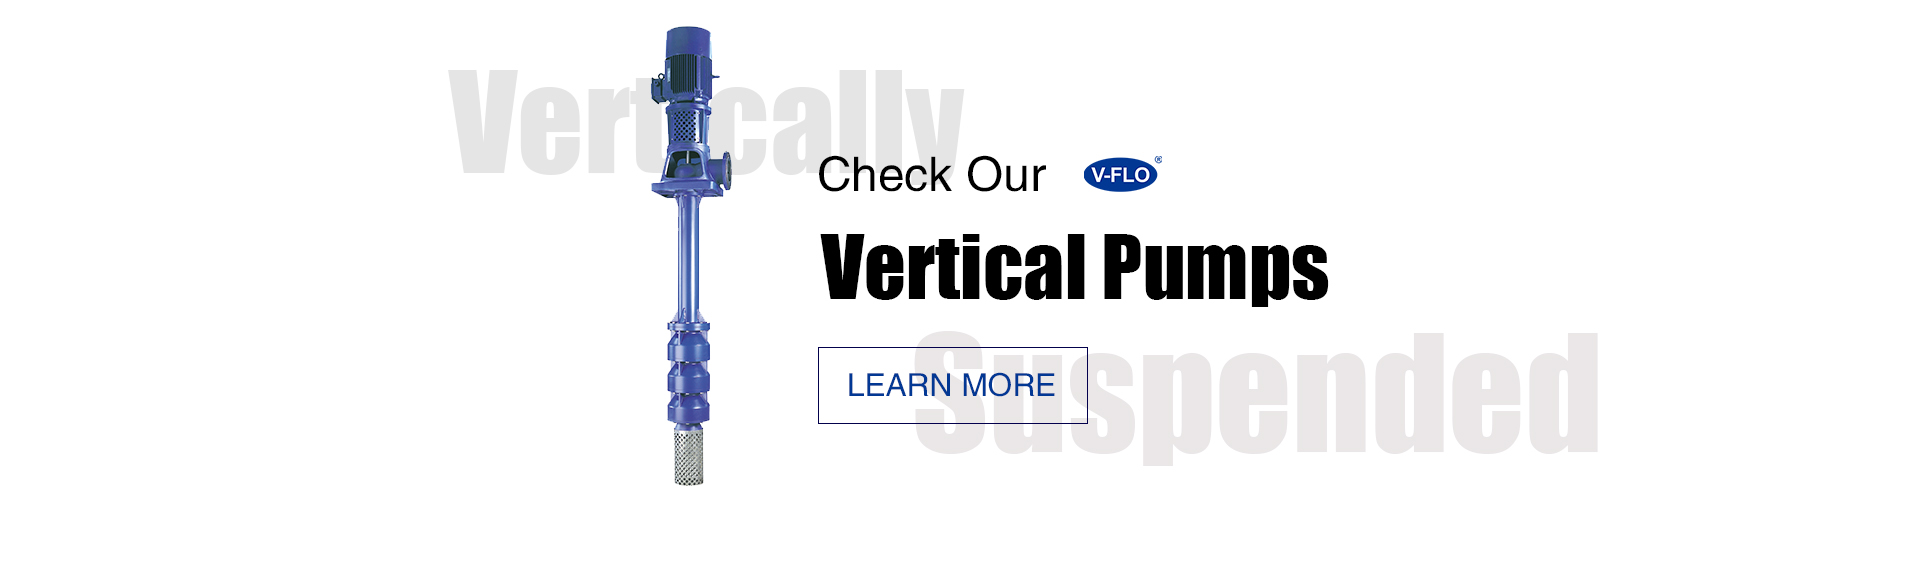 vertical pumps